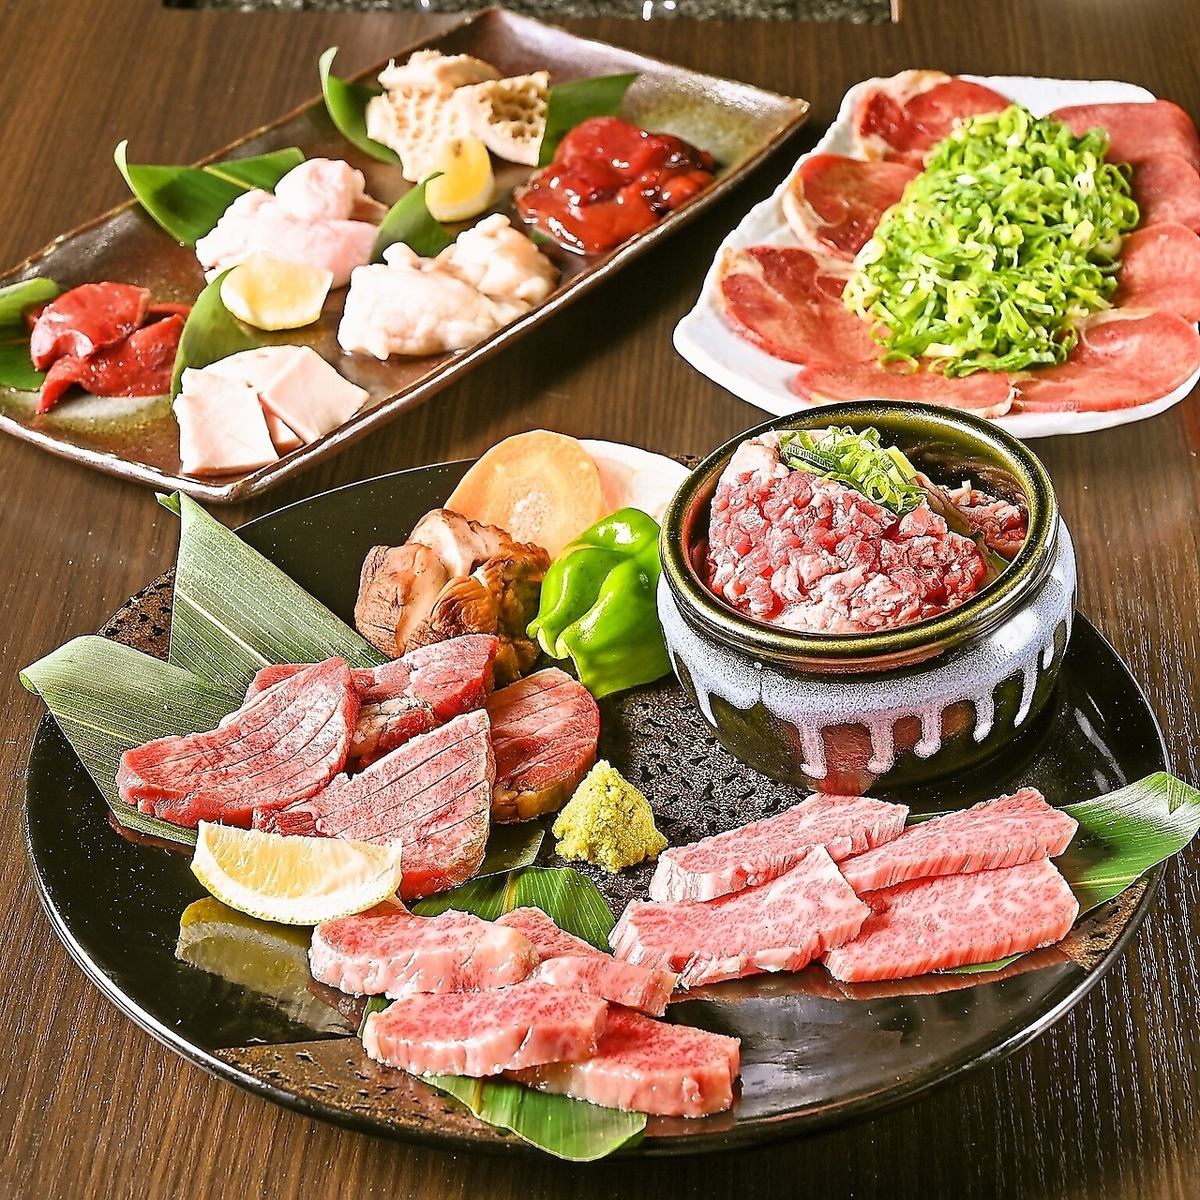 가족이나 친구와의 식사에 【고기 도매점 피콜로】에서 야키니쿠를 부디!